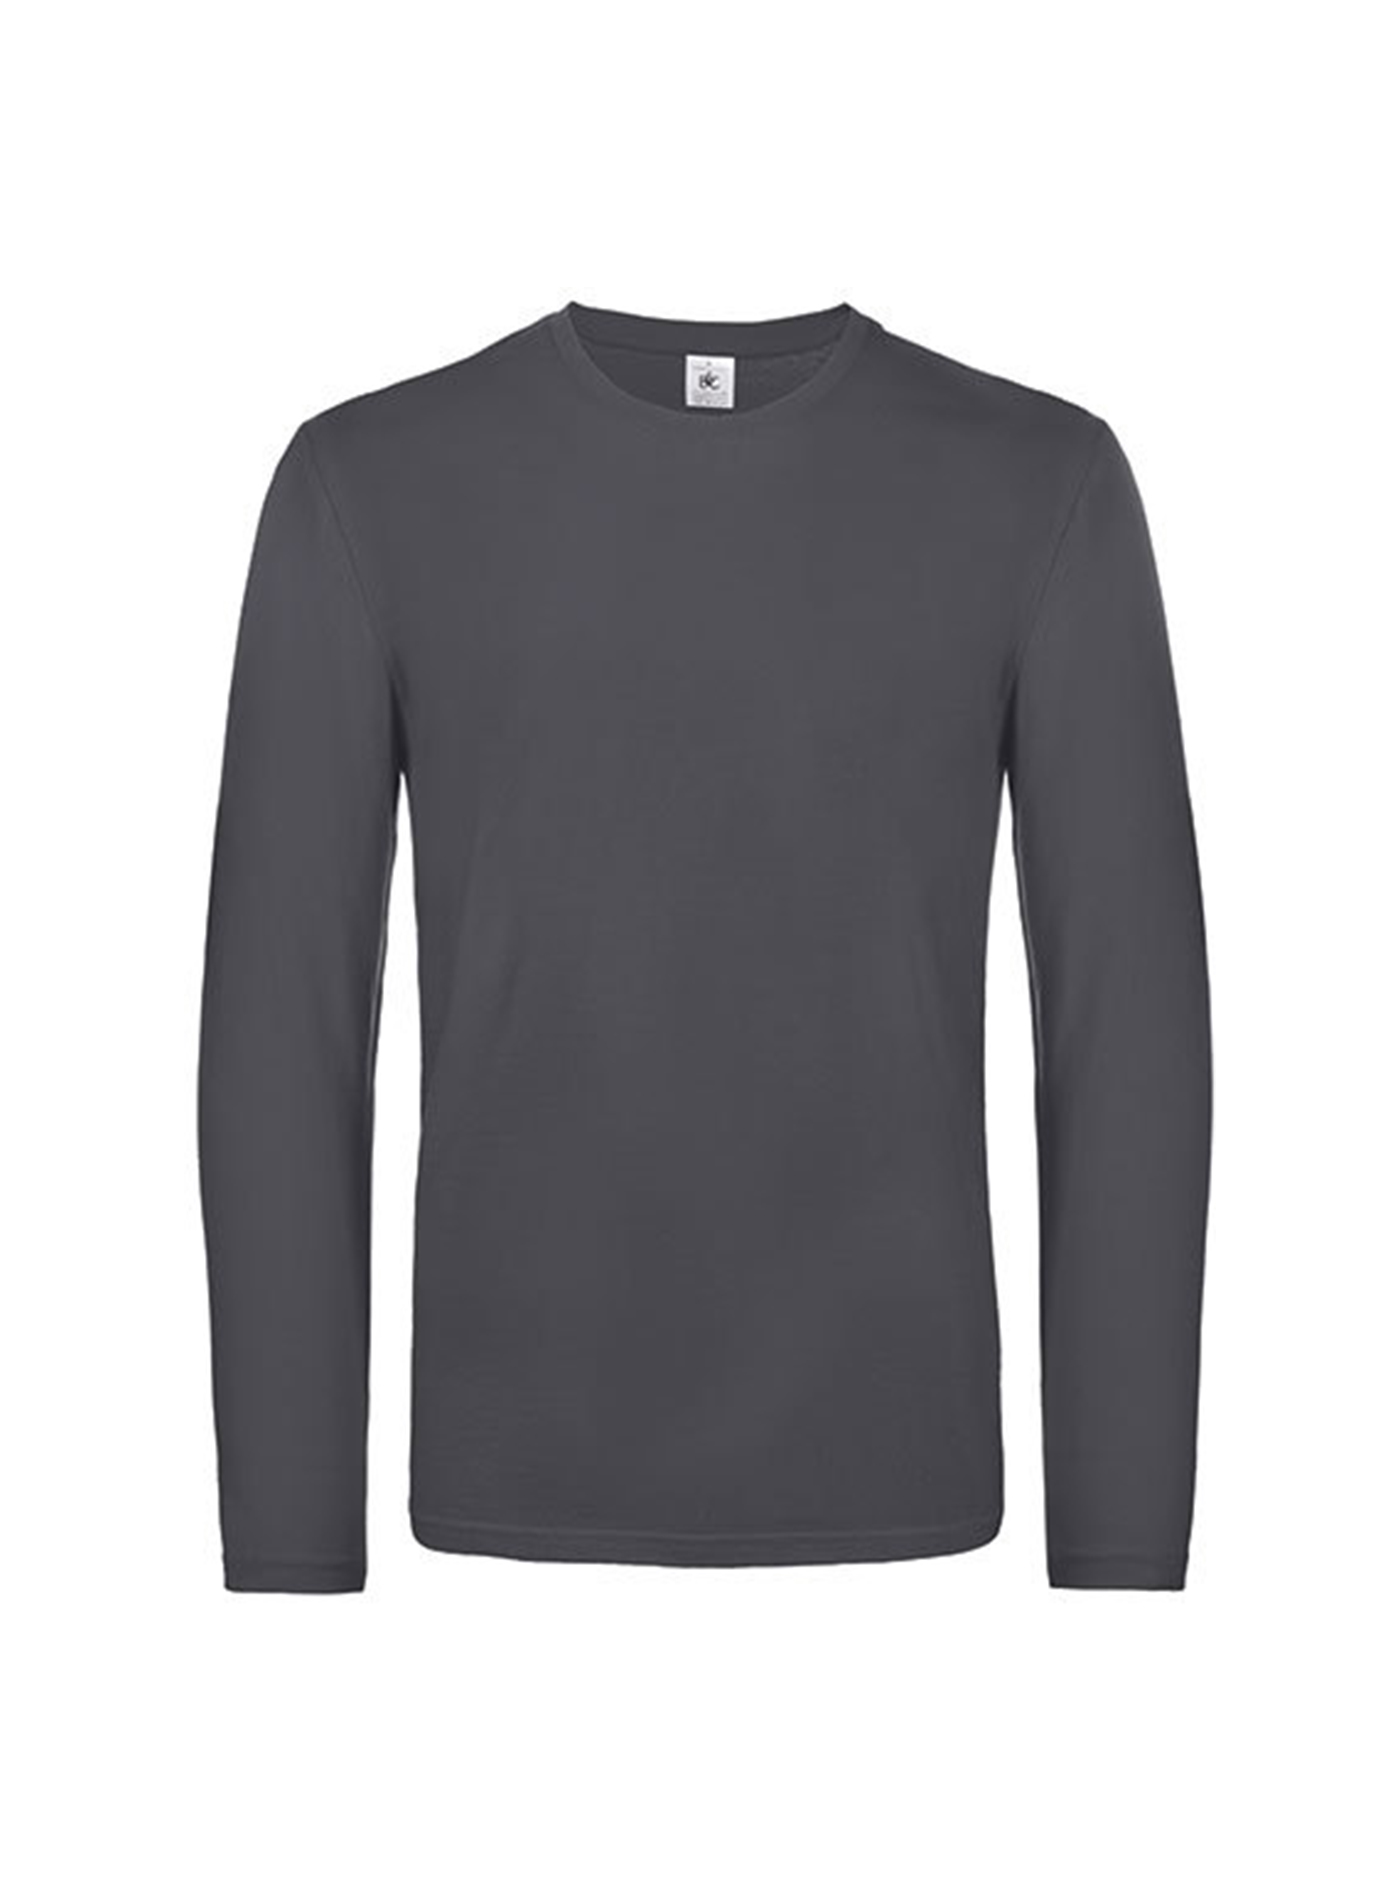 Pánské tričko s dlouhým rukávem B&C Collection - Sytě šedá L